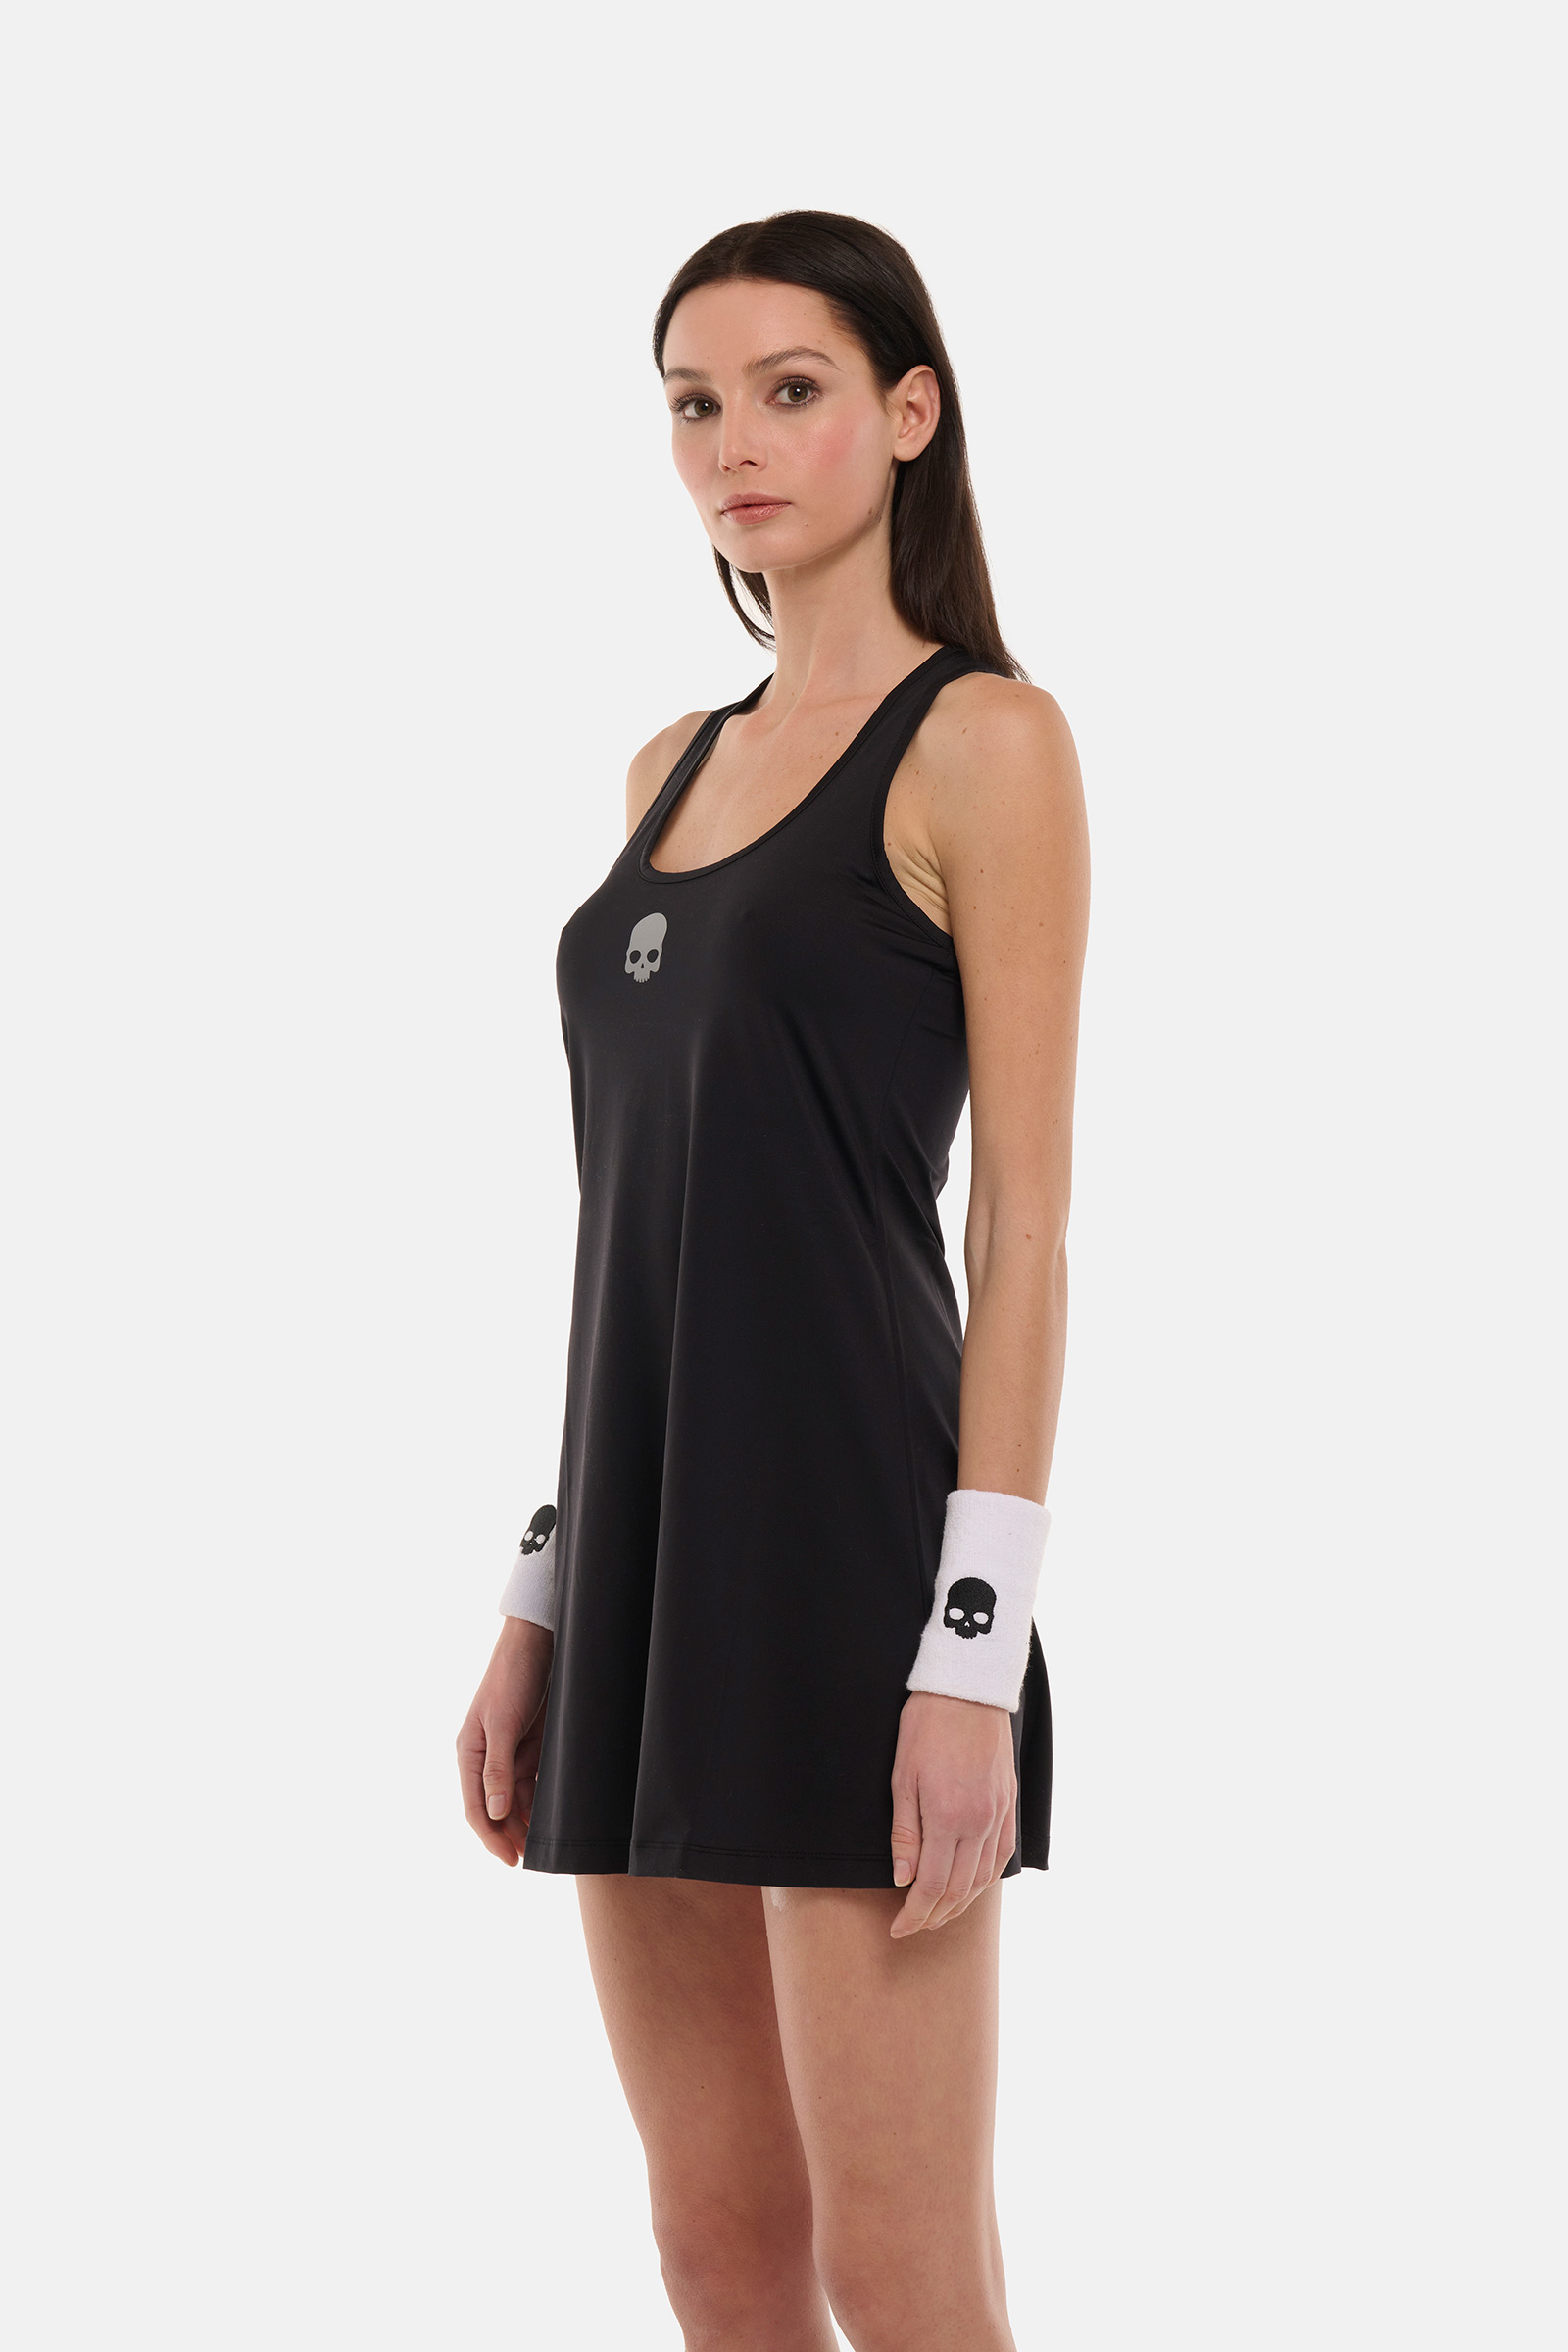 BASIC TECH DRESS - BLACK - Hydrogen - Luxury Sportwear